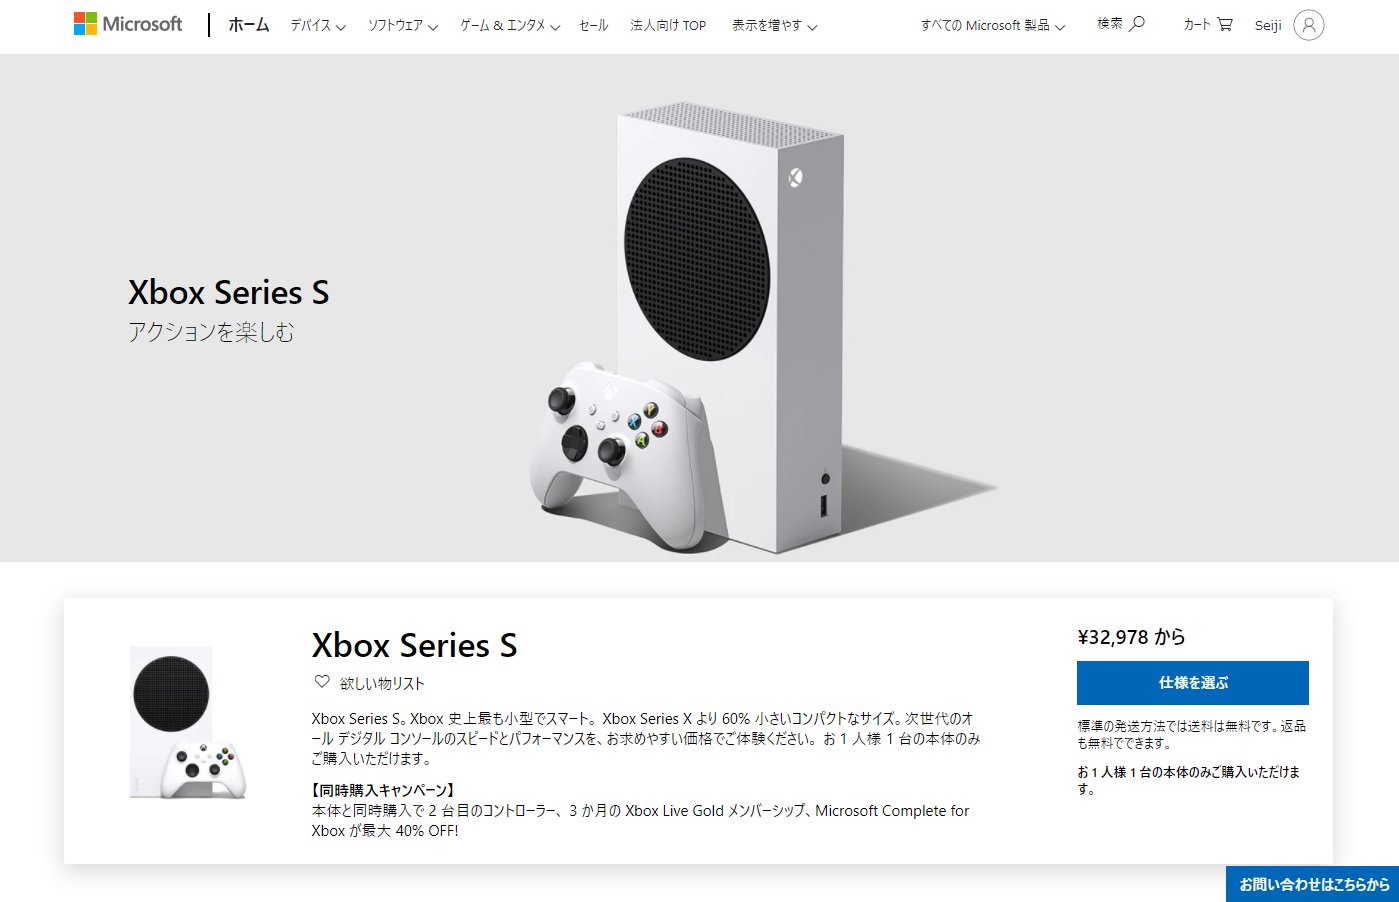 【ほぼ新品】 Xbox Series S 本体家庭用ゲーム機本体